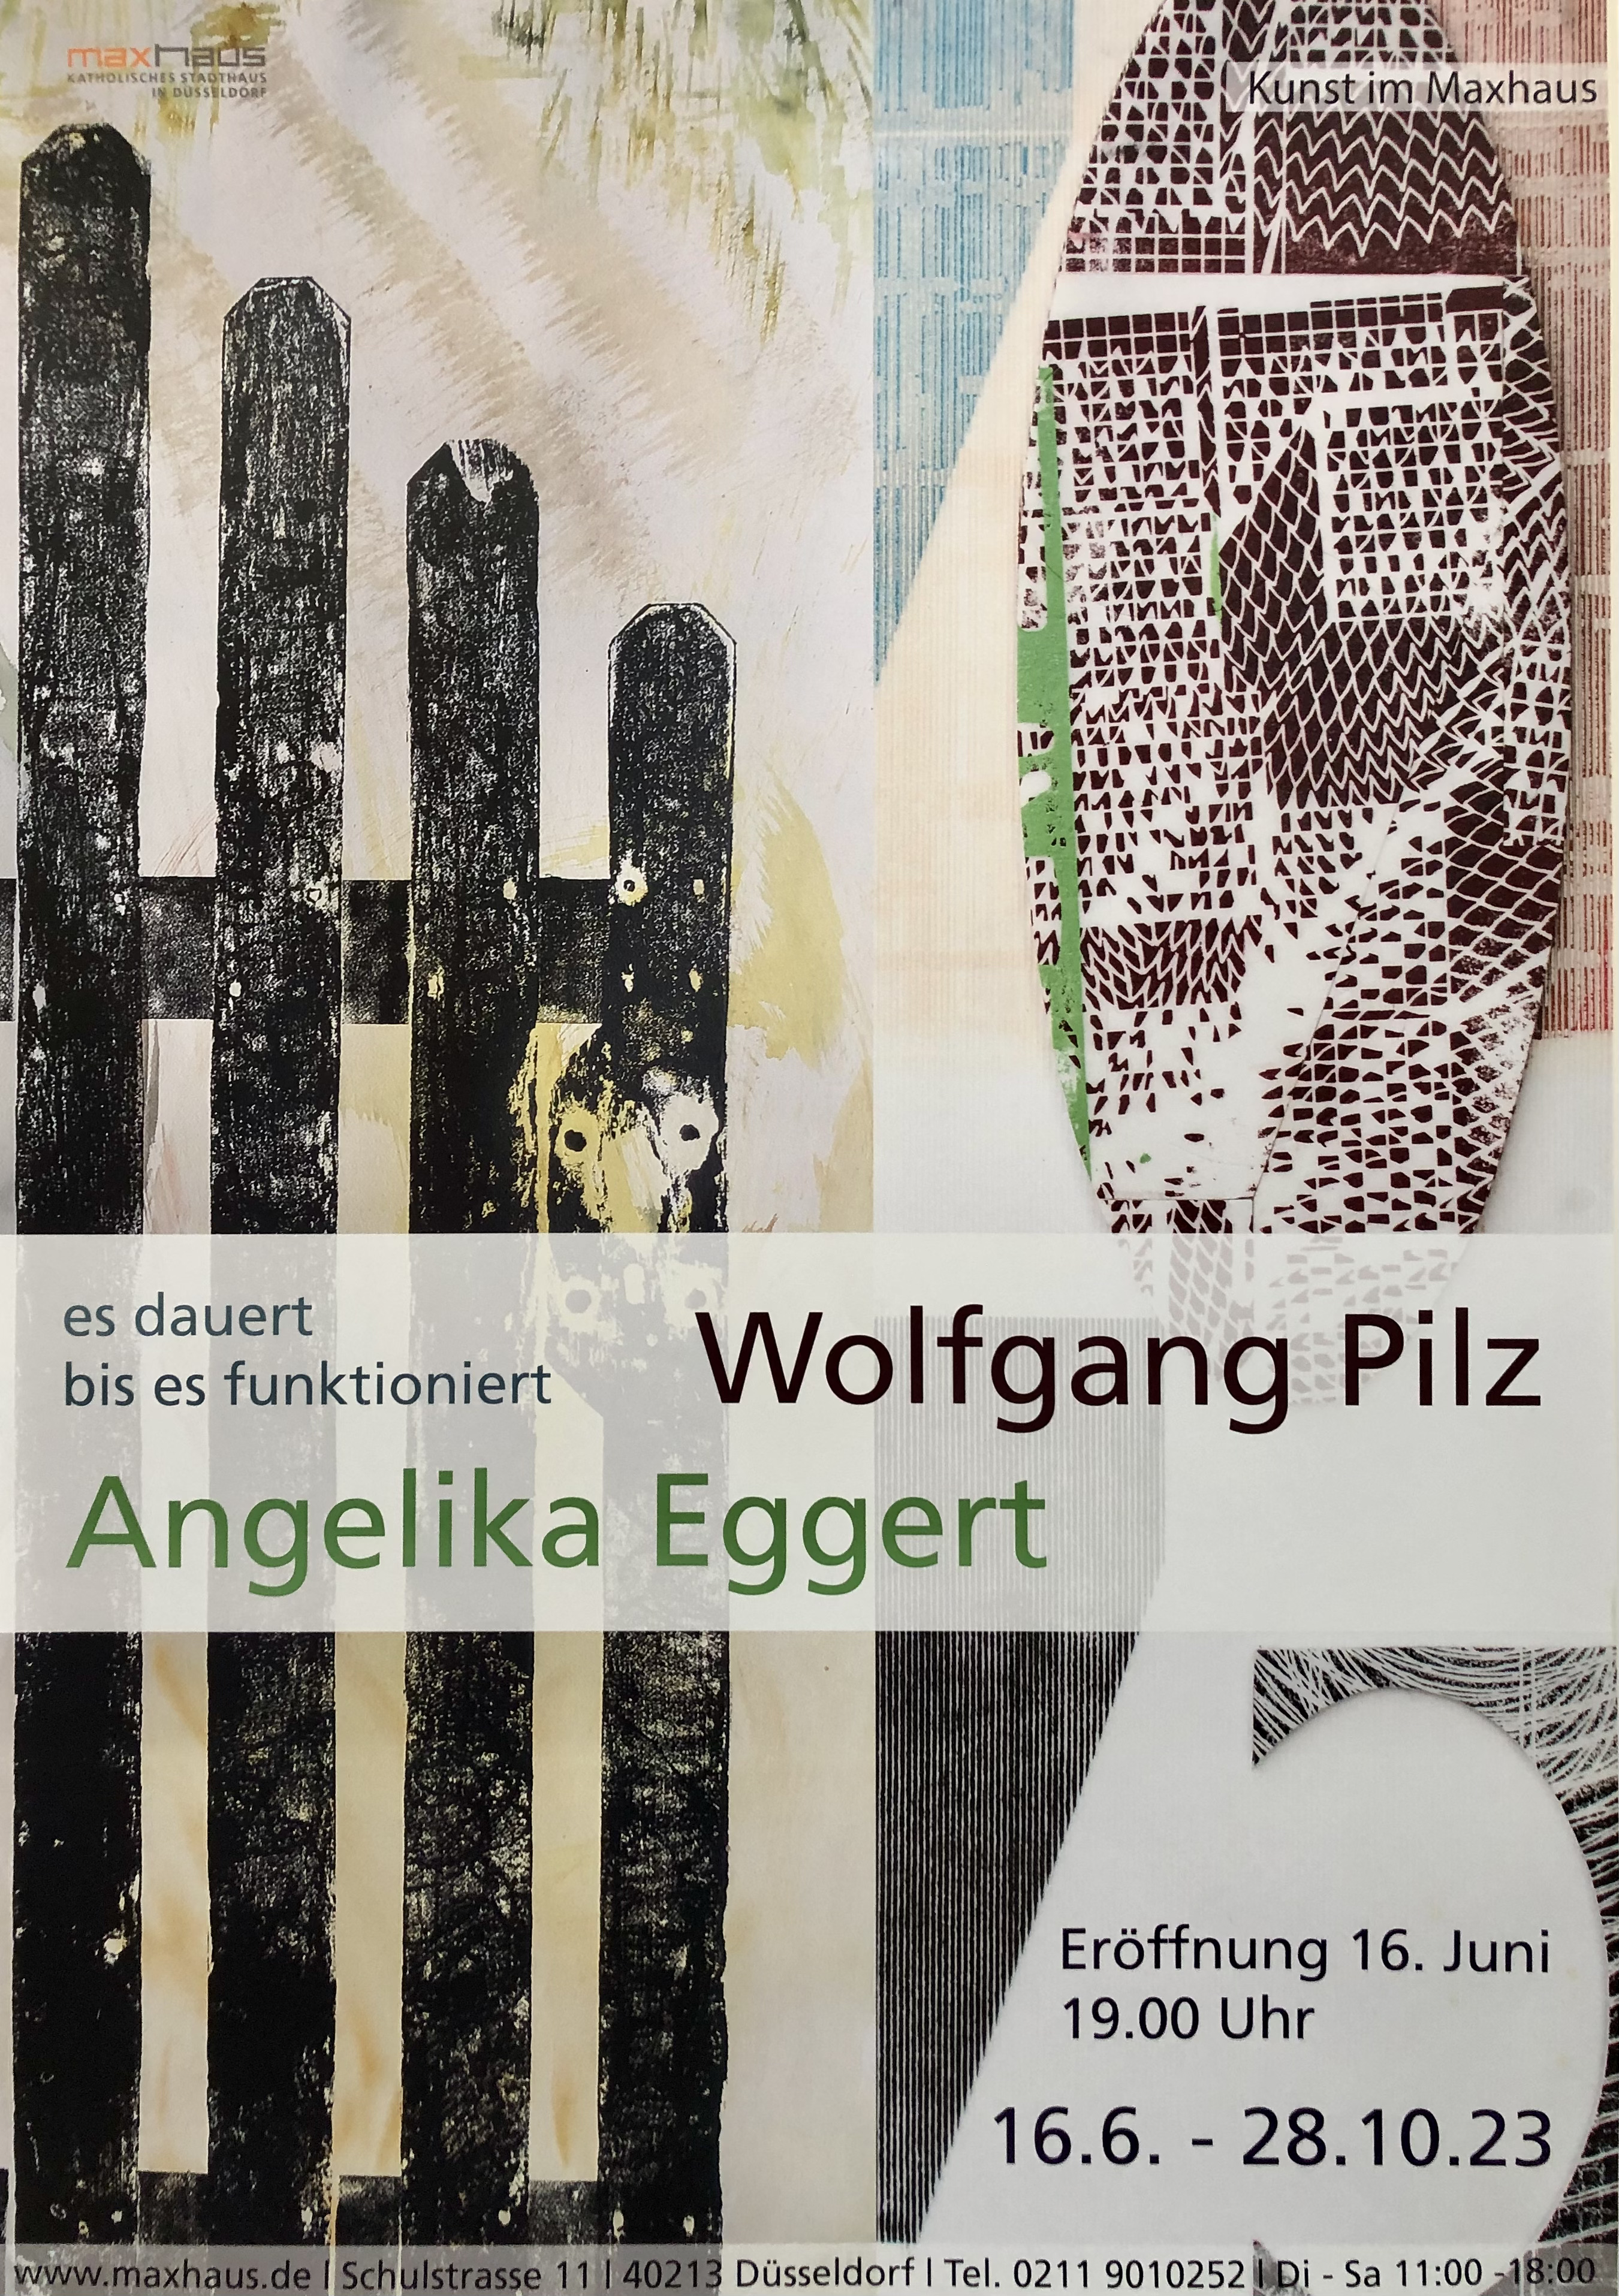 Maxhaus D�sseldorf; Angelika Eggert; Holzschnitt; Ruderalkultur; Urbane Landschaft